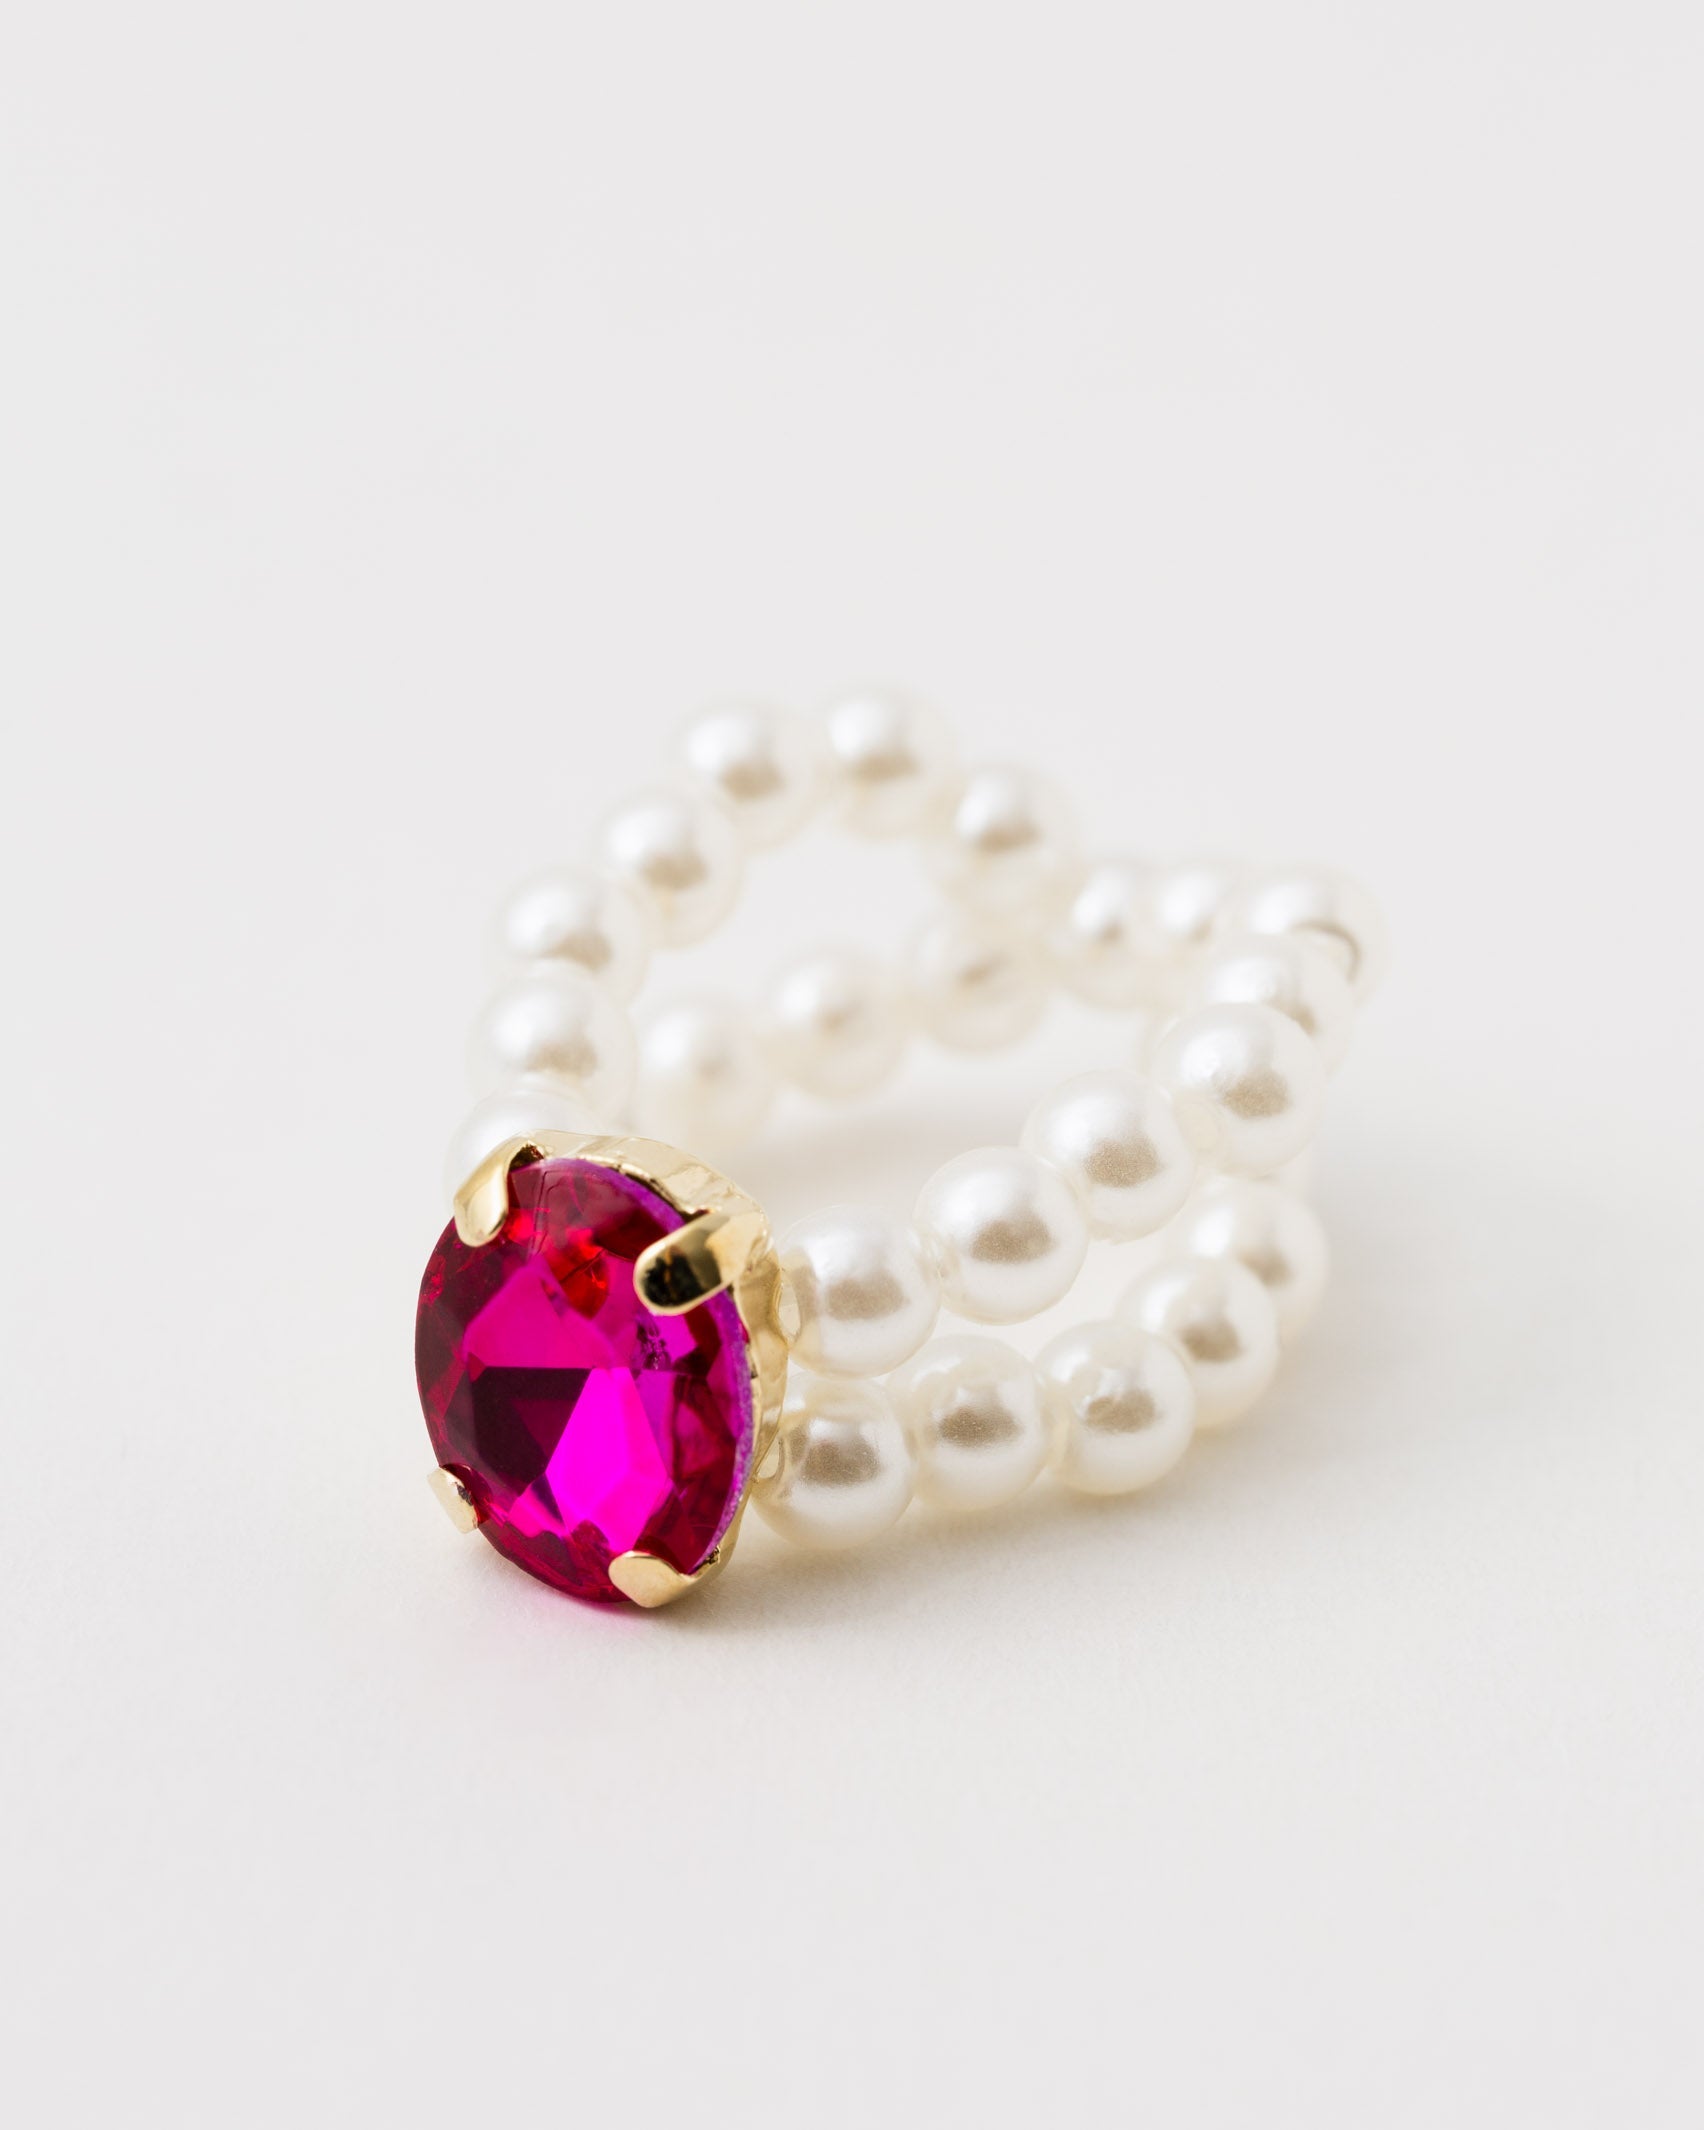 Perlenring mit buntem Stein - Broke + Schön#farbe_pink-yarrow